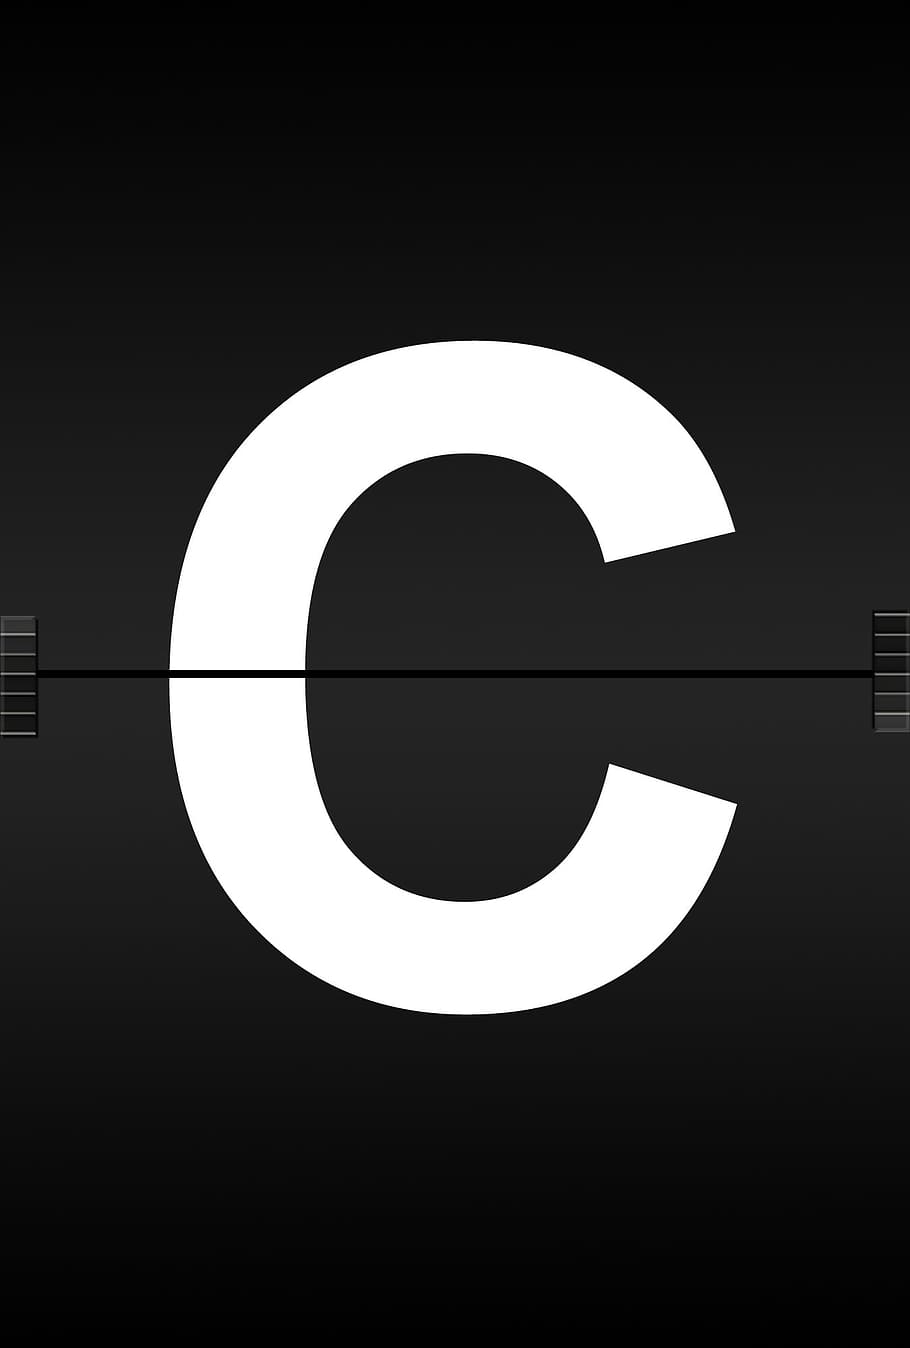 logotipo c, letras, abc, alfabeto, fuente de diario, aeropuerto, marcador, anuncio, estación de ferrocarril, tablero